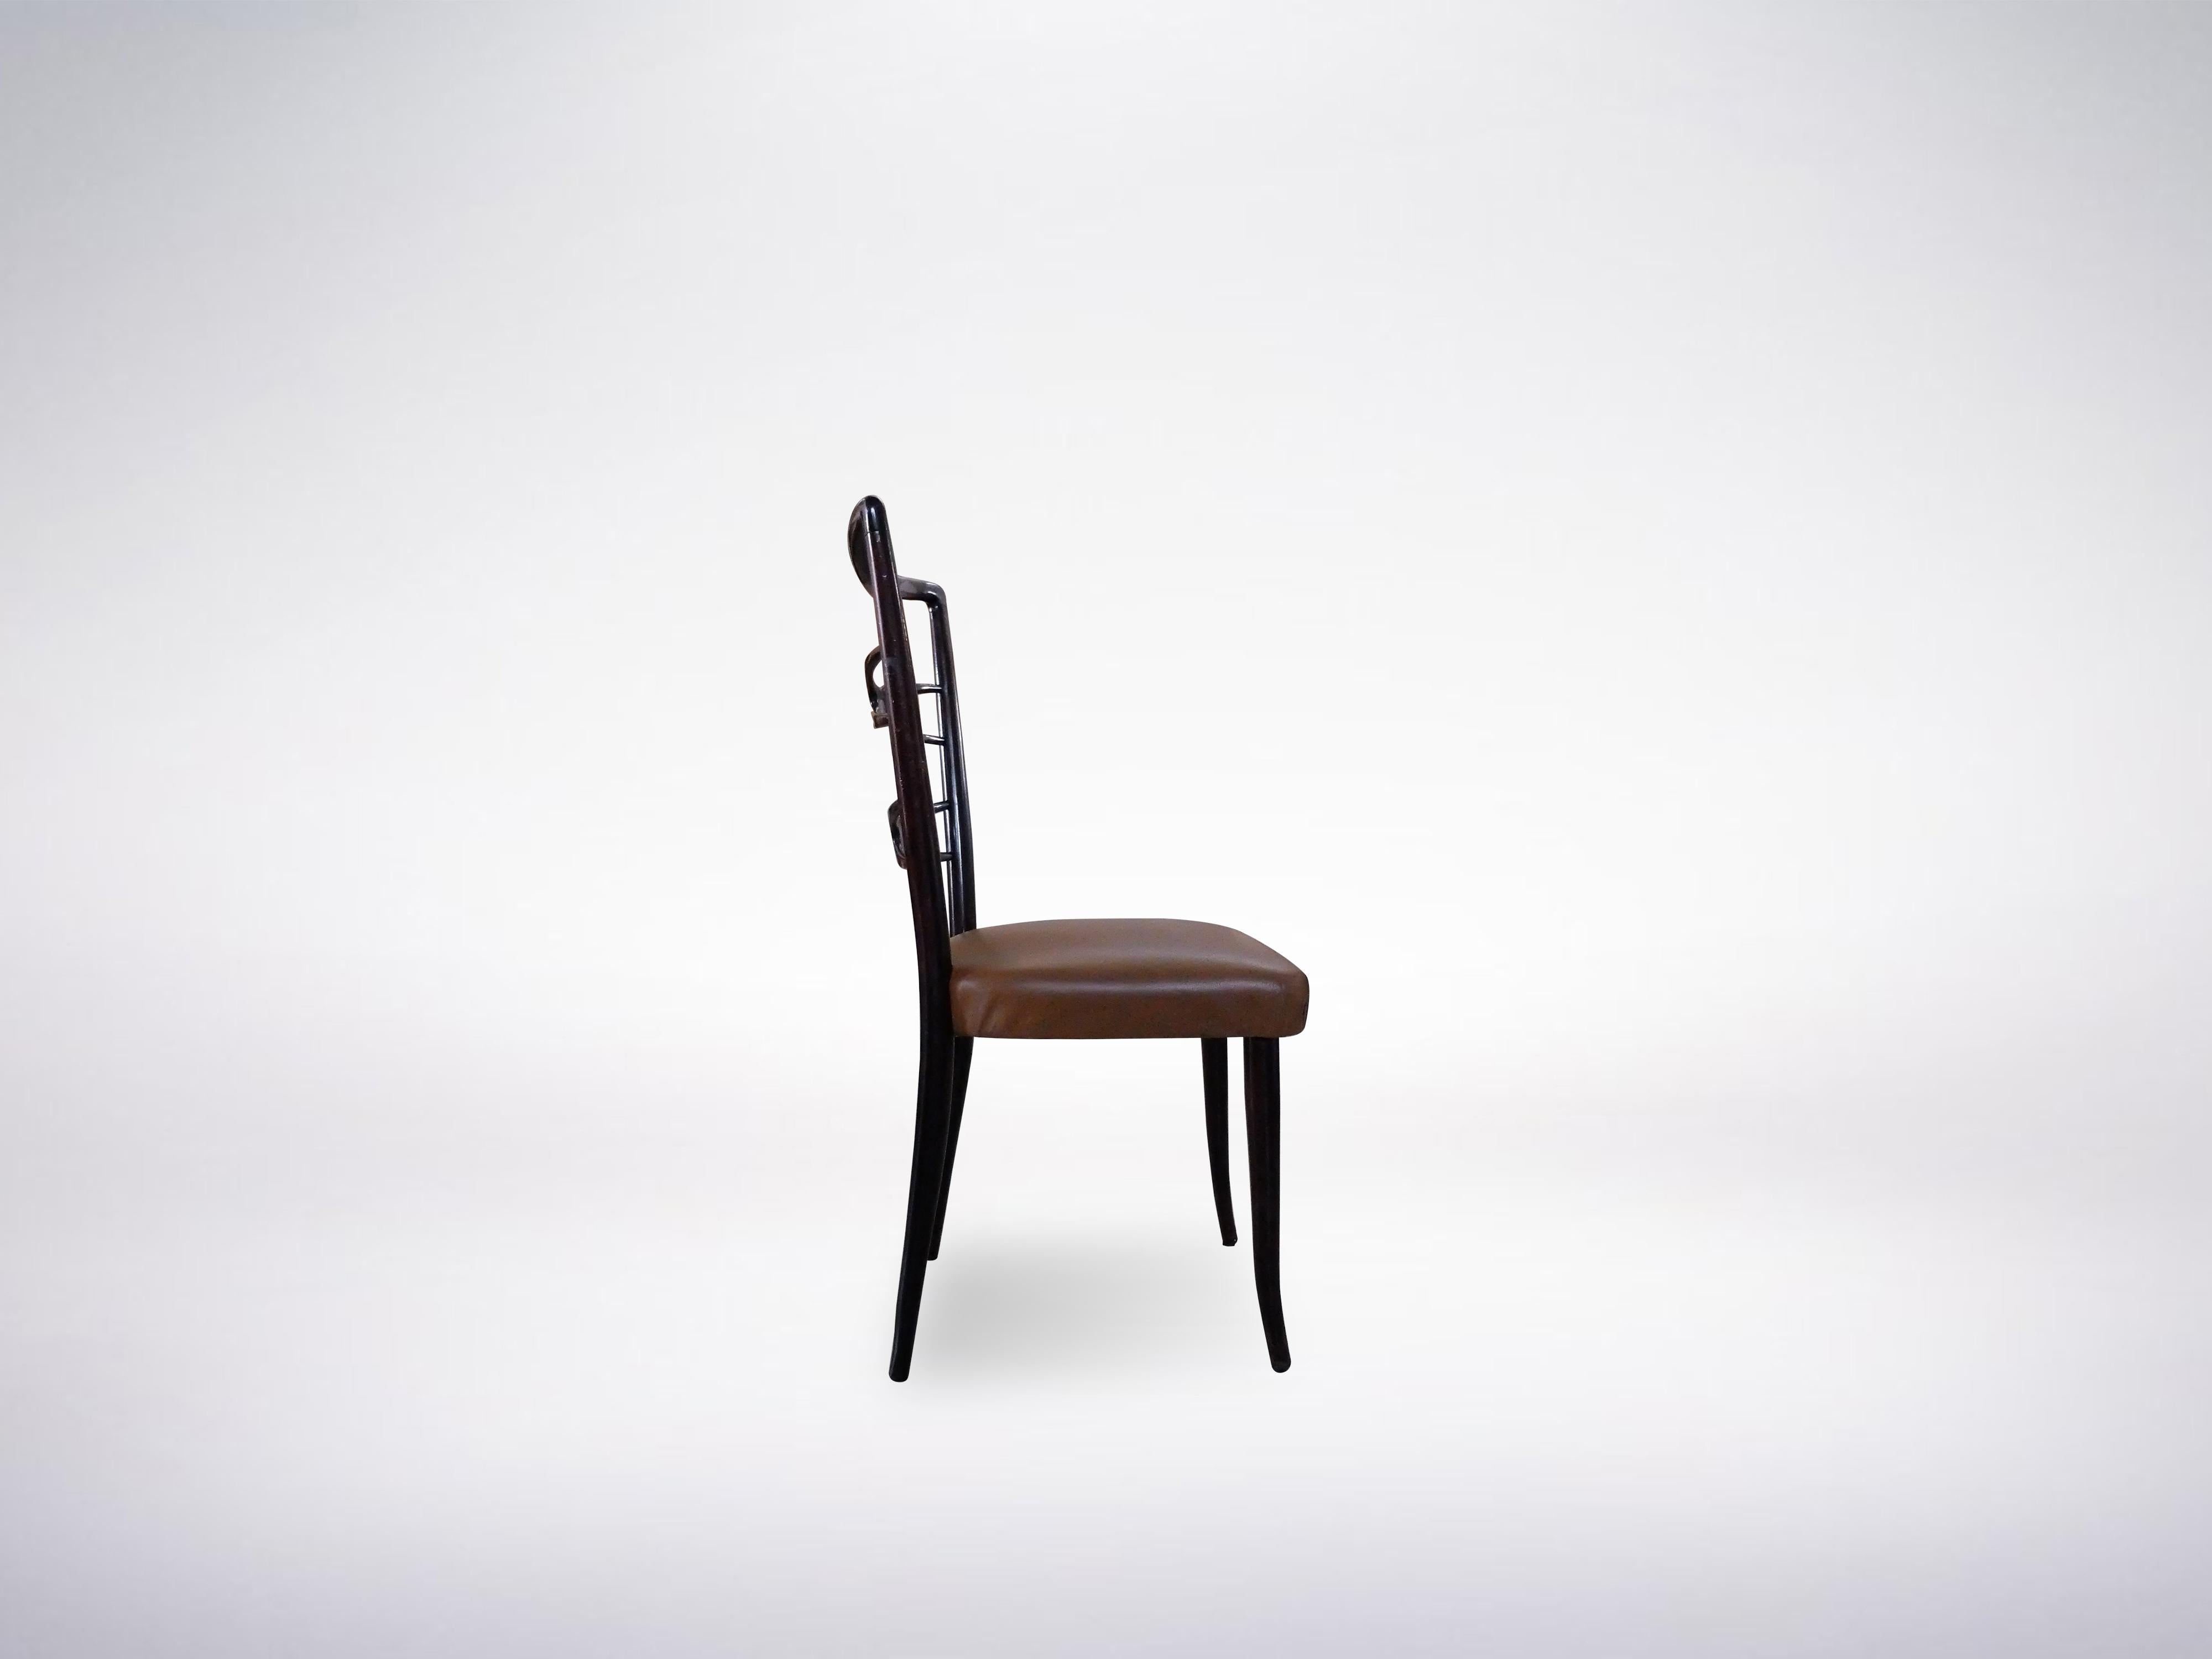 Ensemble de six chaises de salle à manger en bois ébonisé et cuir marron de Guglielmo Ulrich, vers 1940.

La particularité de l'ensemble est son élégant dossier aux motifs en bois croisés. L'ensemble est parfait pour compléter la table à manger de